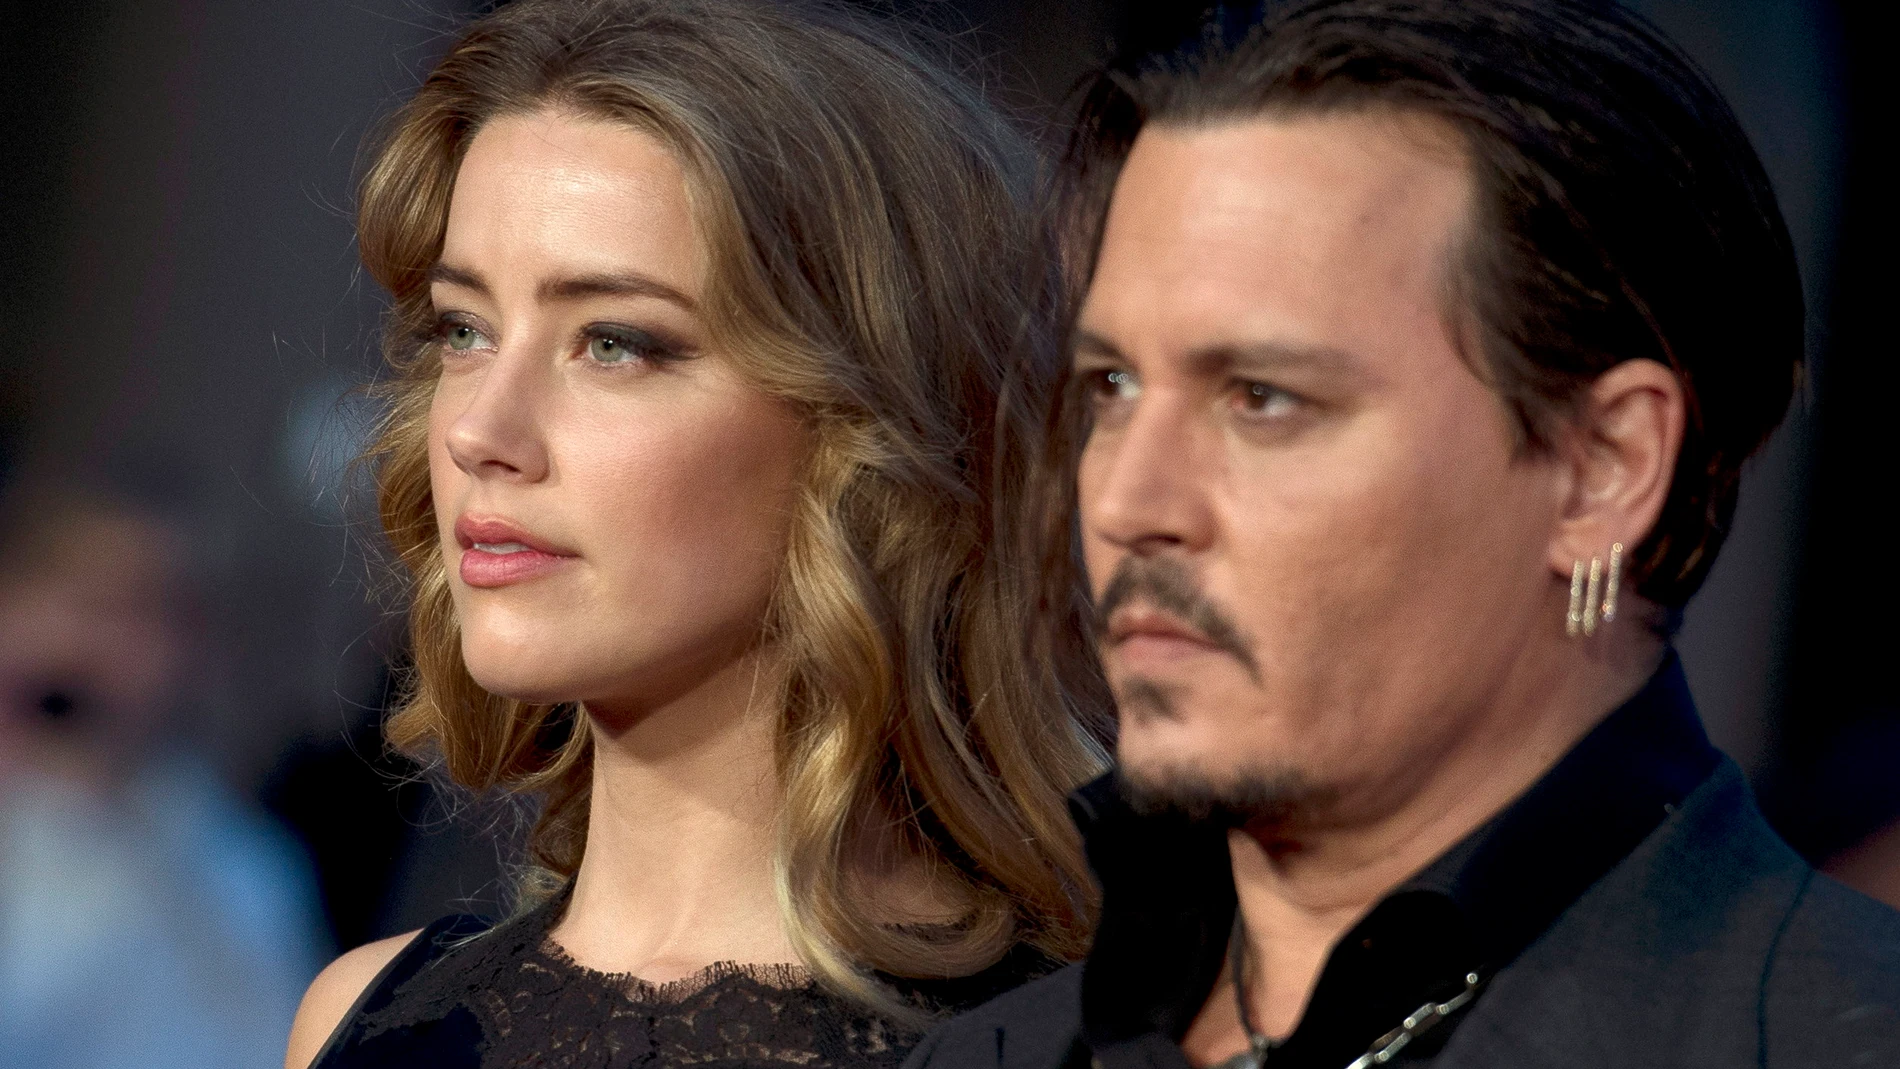 Johnny Depp y Amber Heard, en 2015 cuando eran pareja